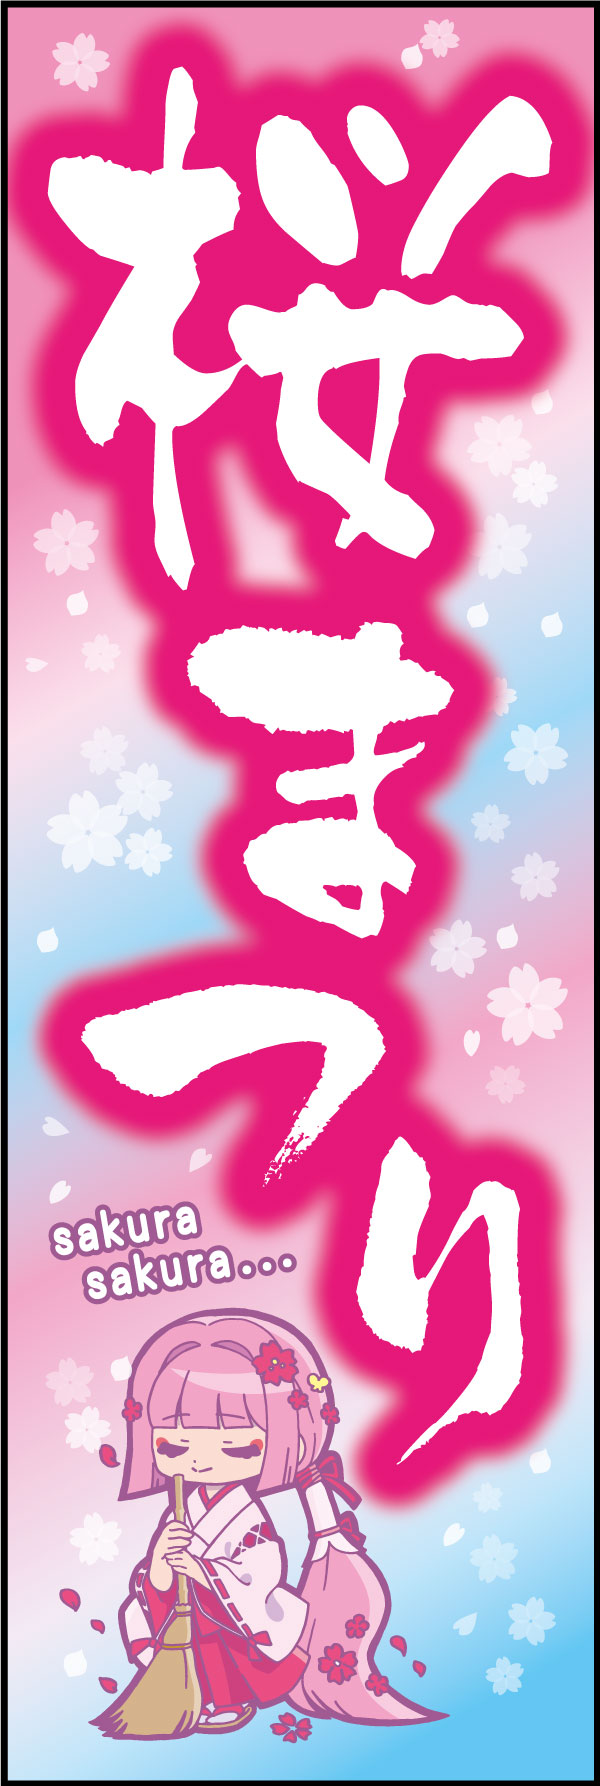 桜祭り 163_01 「桜まつり」のぼりです。青空に舞う桜を背景に、アニメキャラ風の巫女さんの少女が若年層にもアピールします。桜の名所の神社仏閣におすすめの幟です。（M.H)